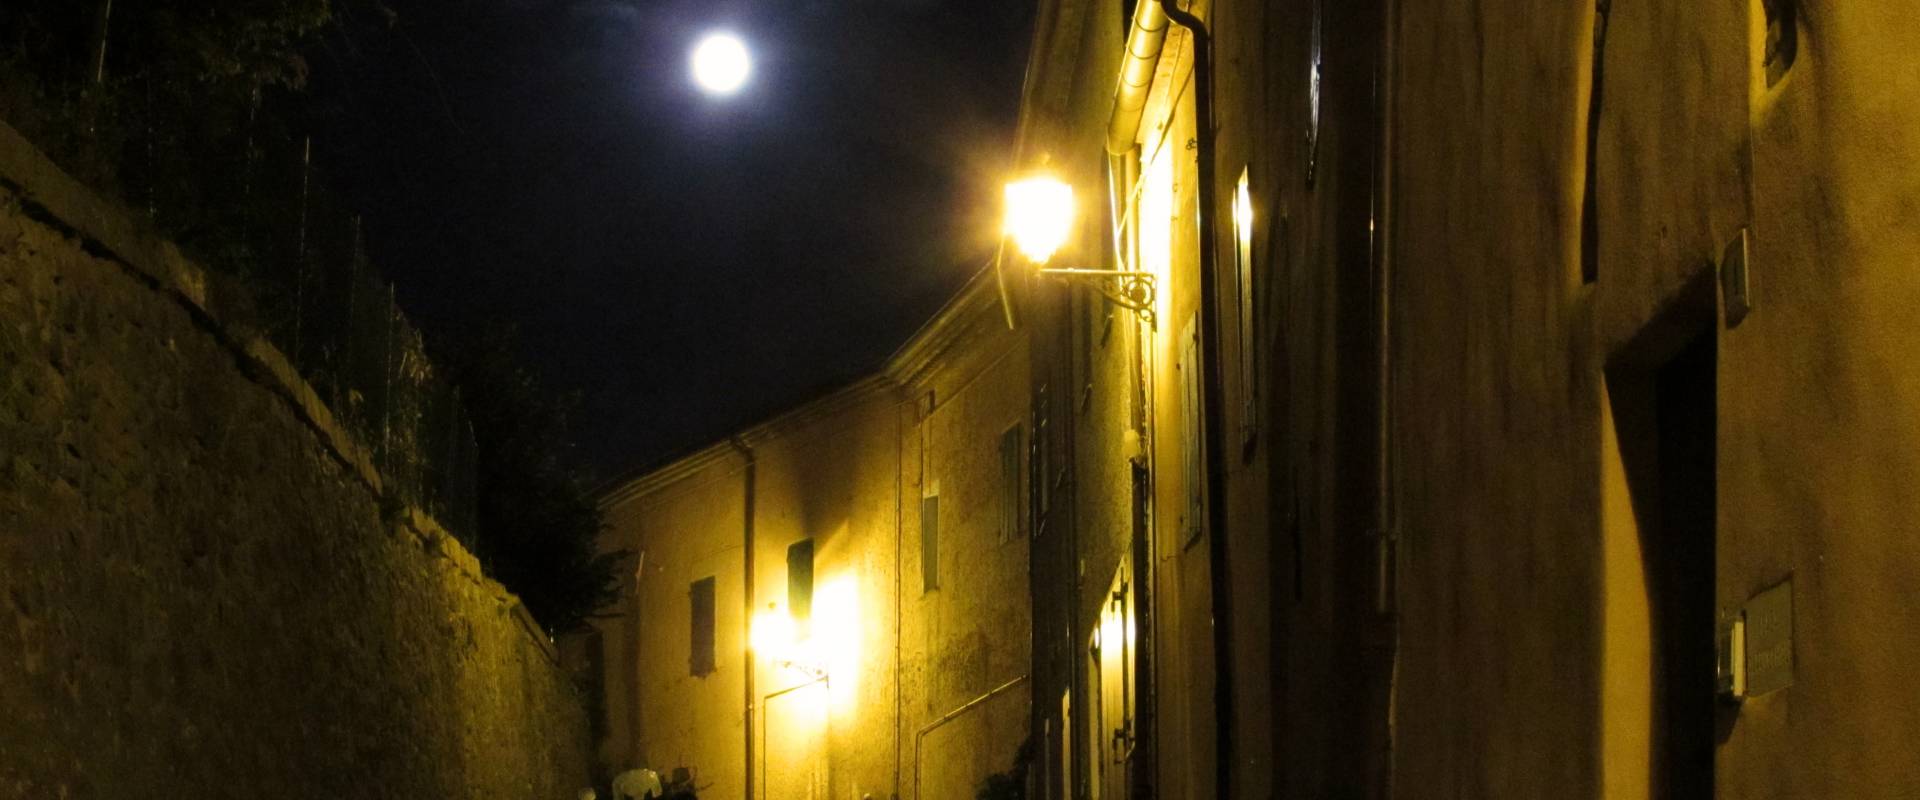 Una vecchia via illuminata dalla luna foto di Larabraga19